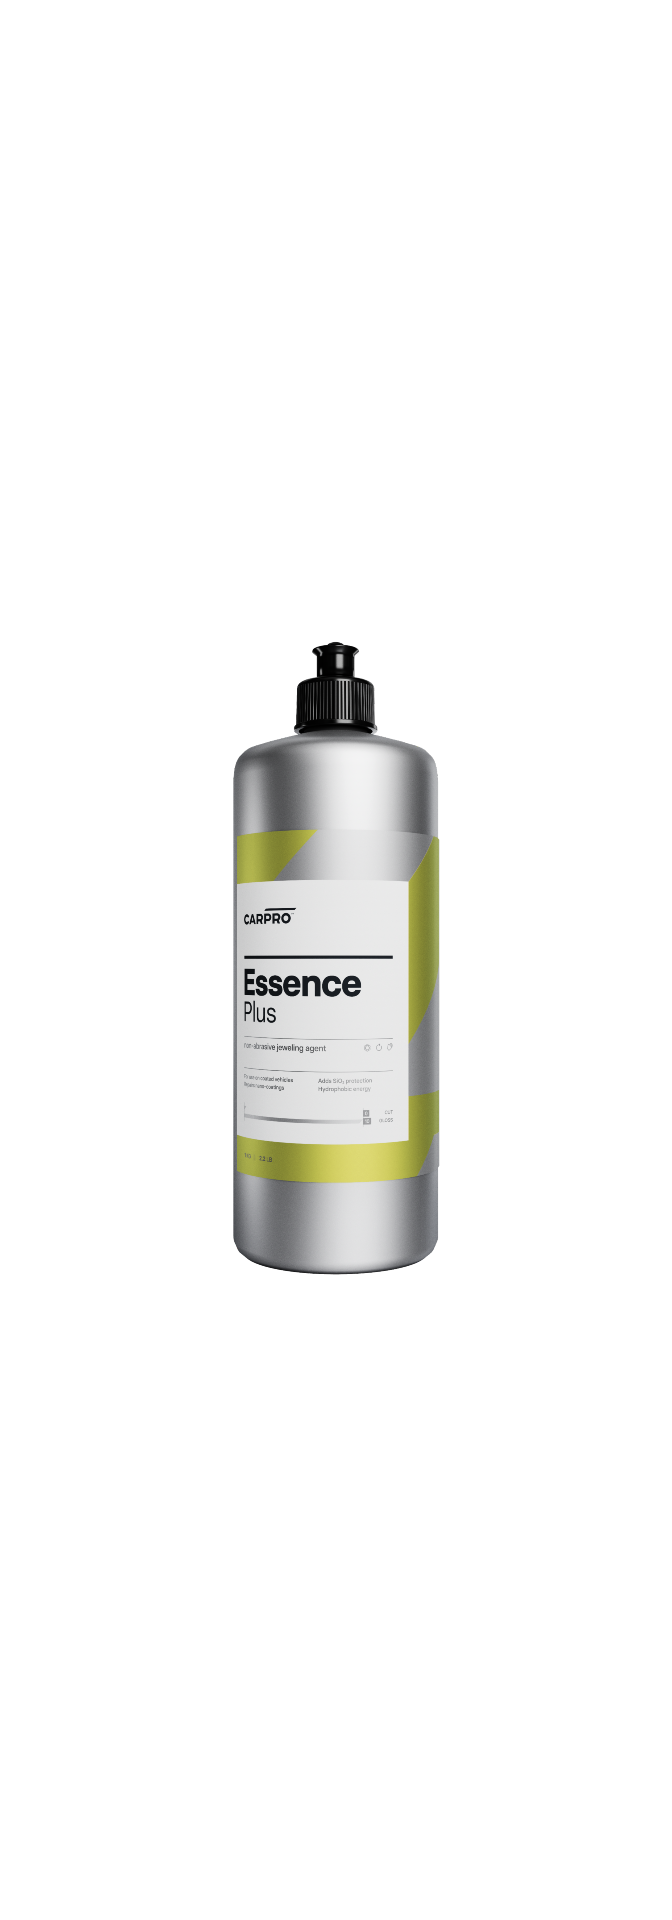 Essence+ – Nanoteknologisk försegling med hydrofobiska egenskaper.